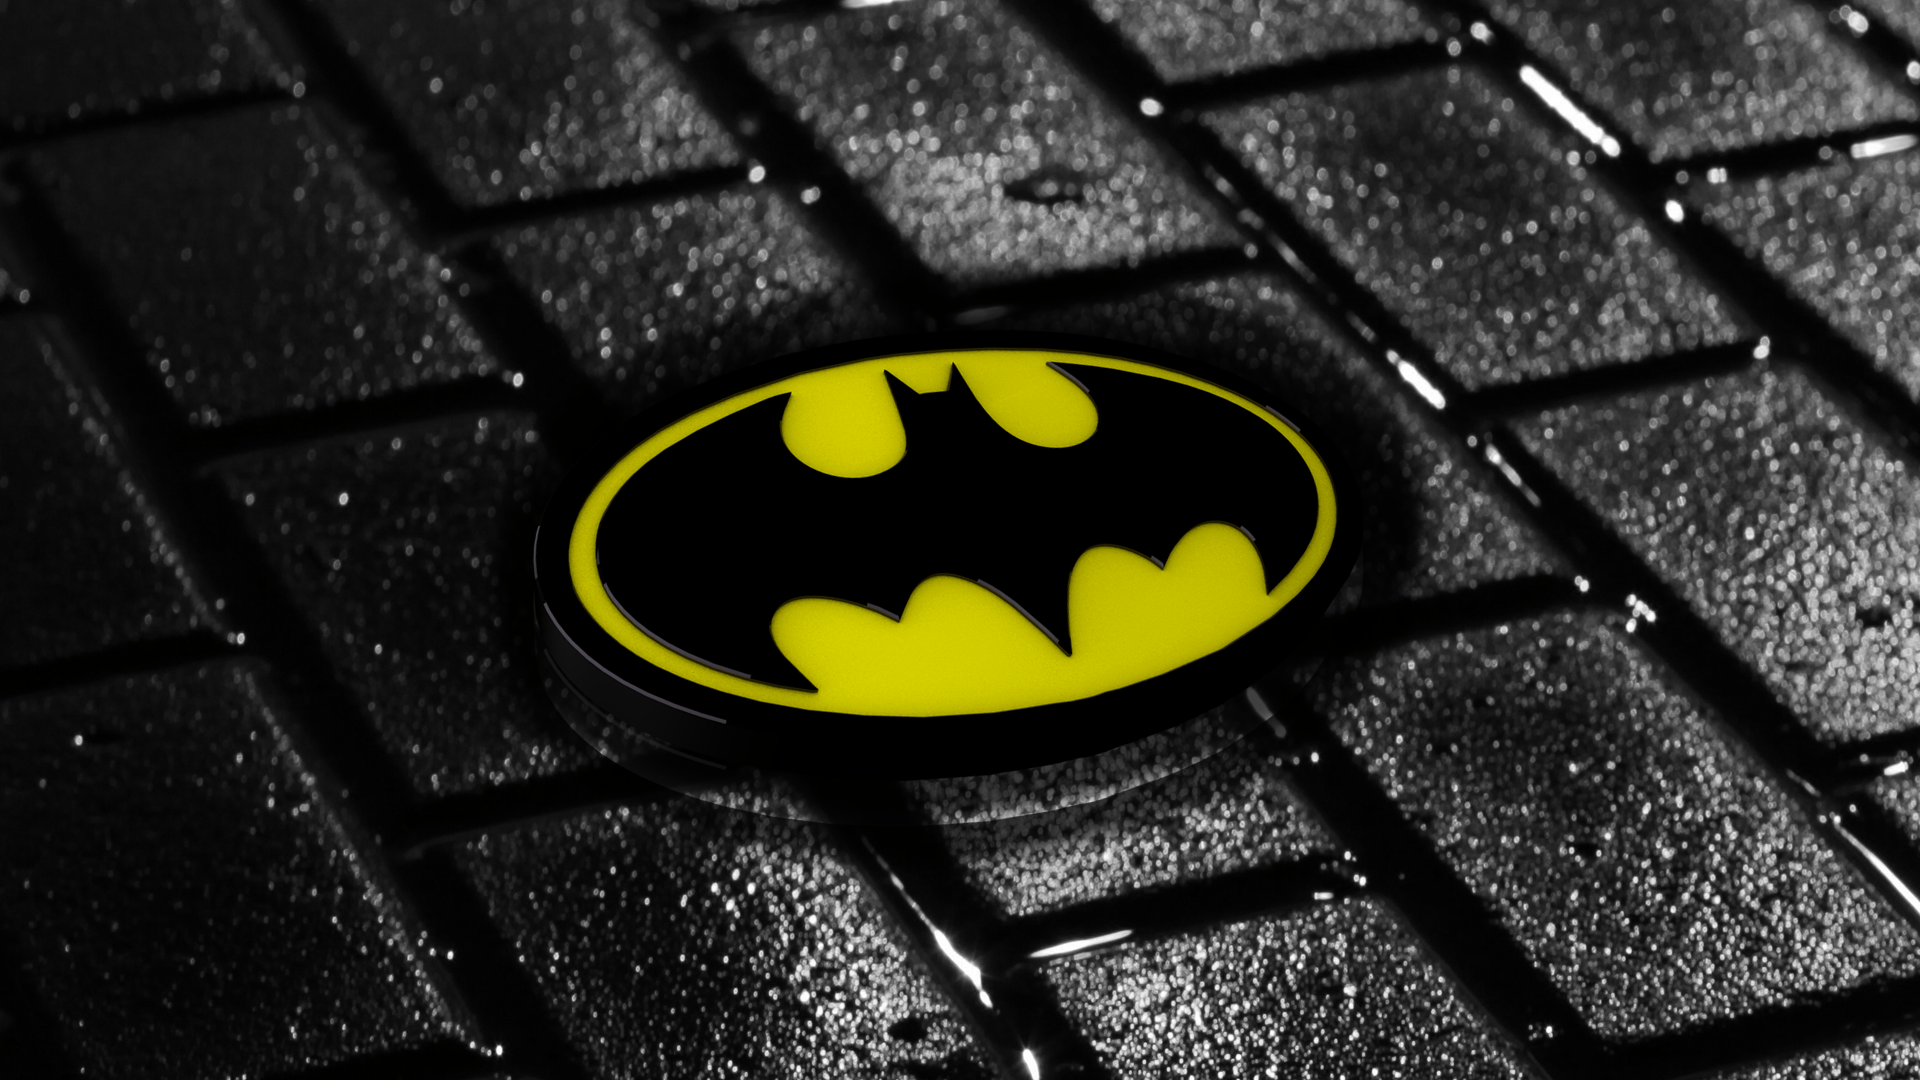 Wallpaper.wiki 3D Batman Logo Wallpaper PIC WPE008297